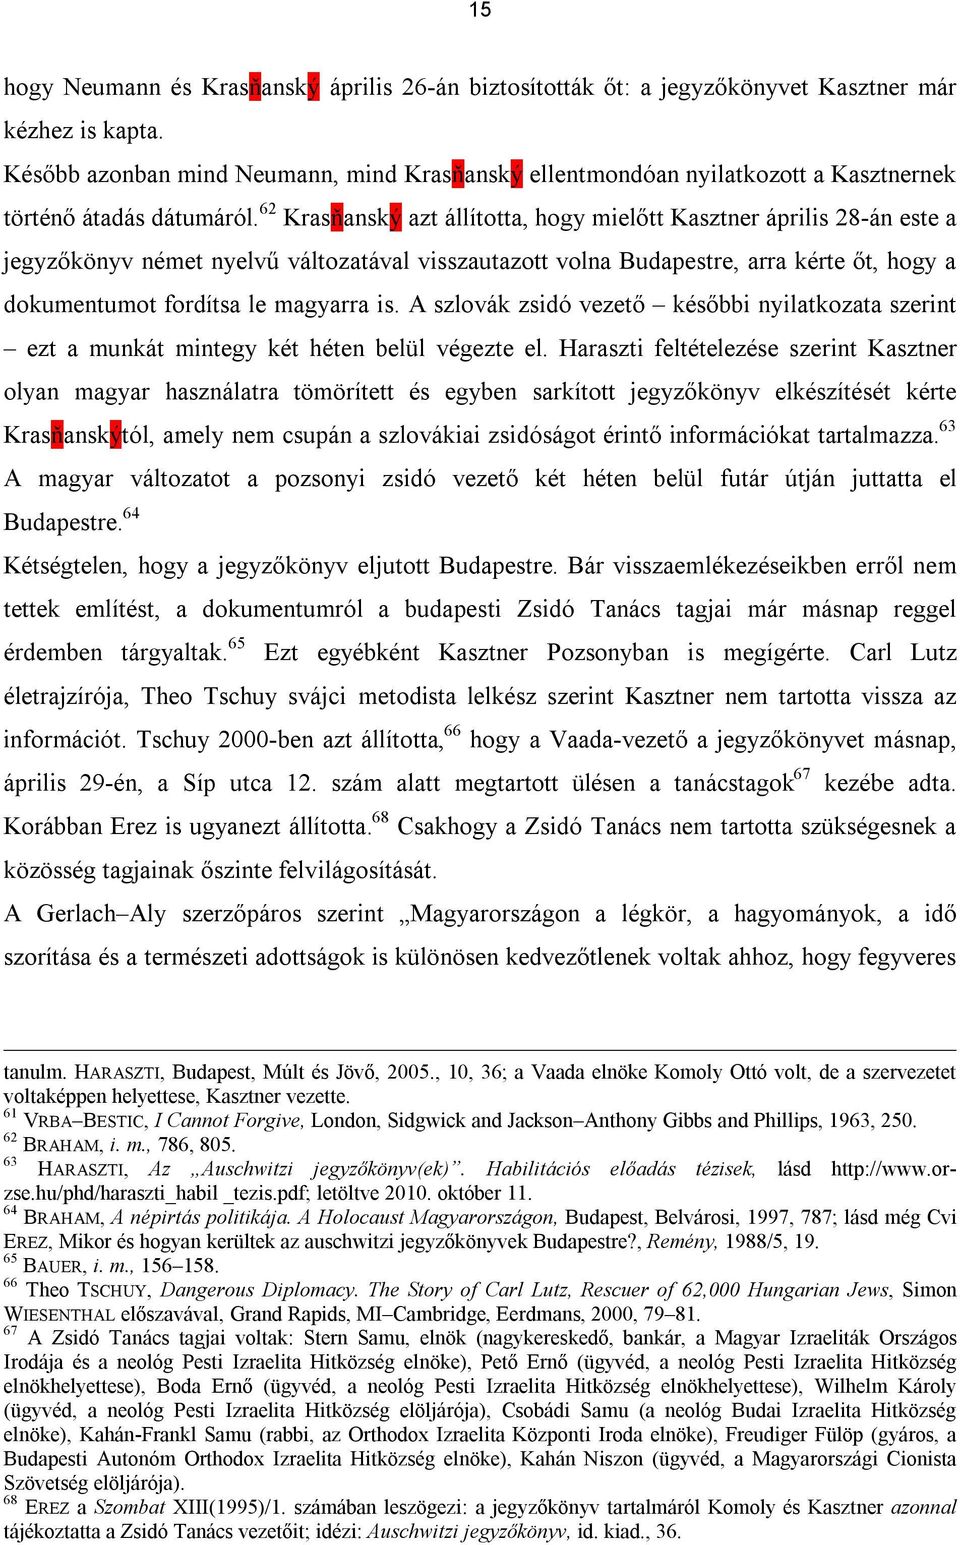 62 Krasňanský azt állította, hogy mielőtt Kasztner április 28-án este a jegyzőkönyv német nyelvű változatával visszautazott volna Budapestre, arra kérte őt, hogy a dokumentumot fordítsa le magyarra